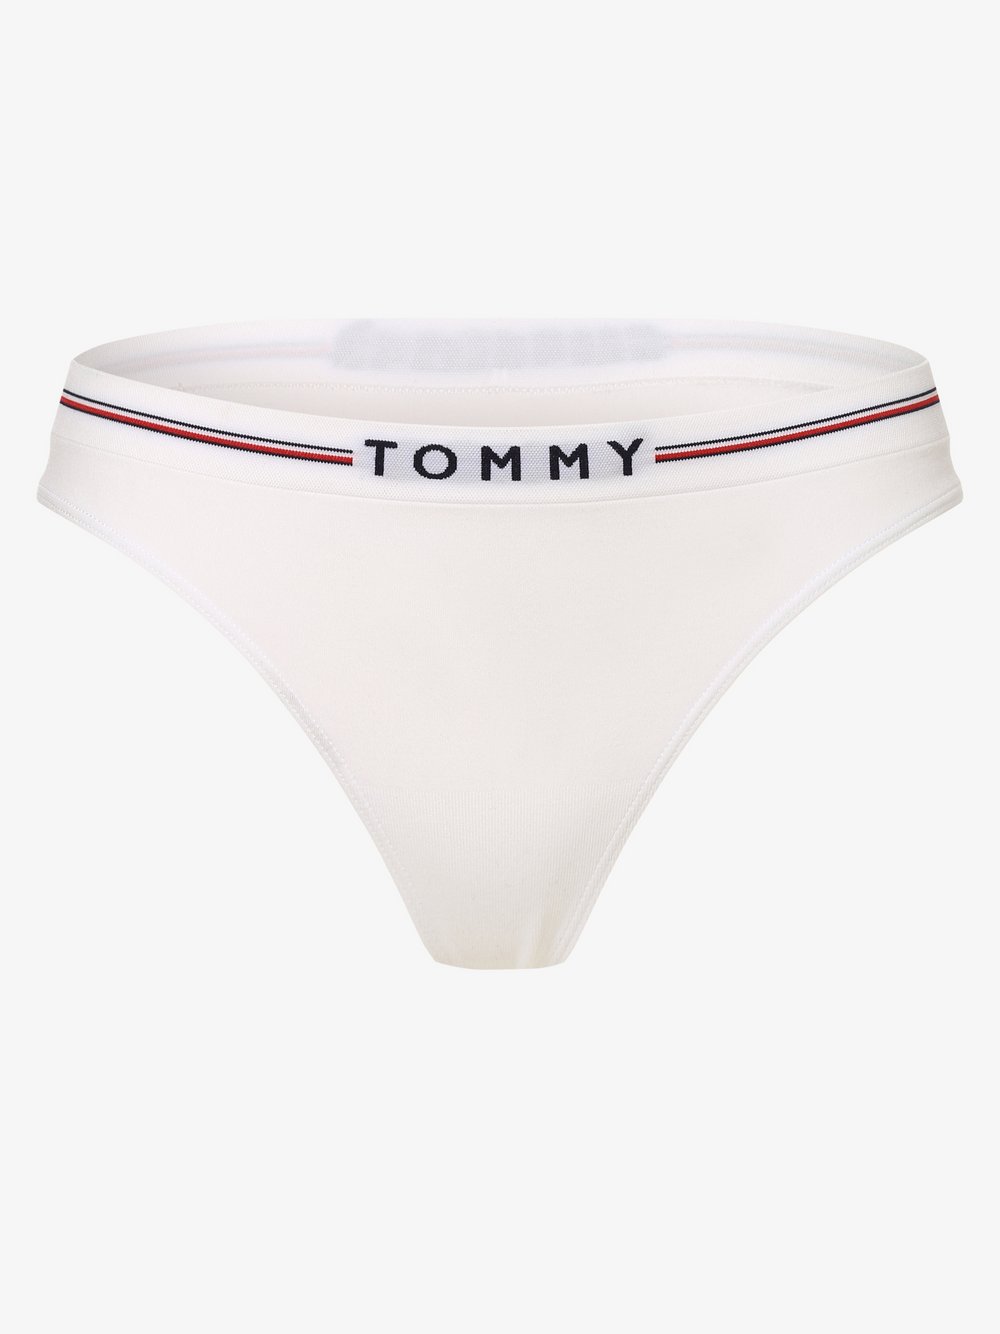 Tommy Hilfiger - Stringi damskie, biały